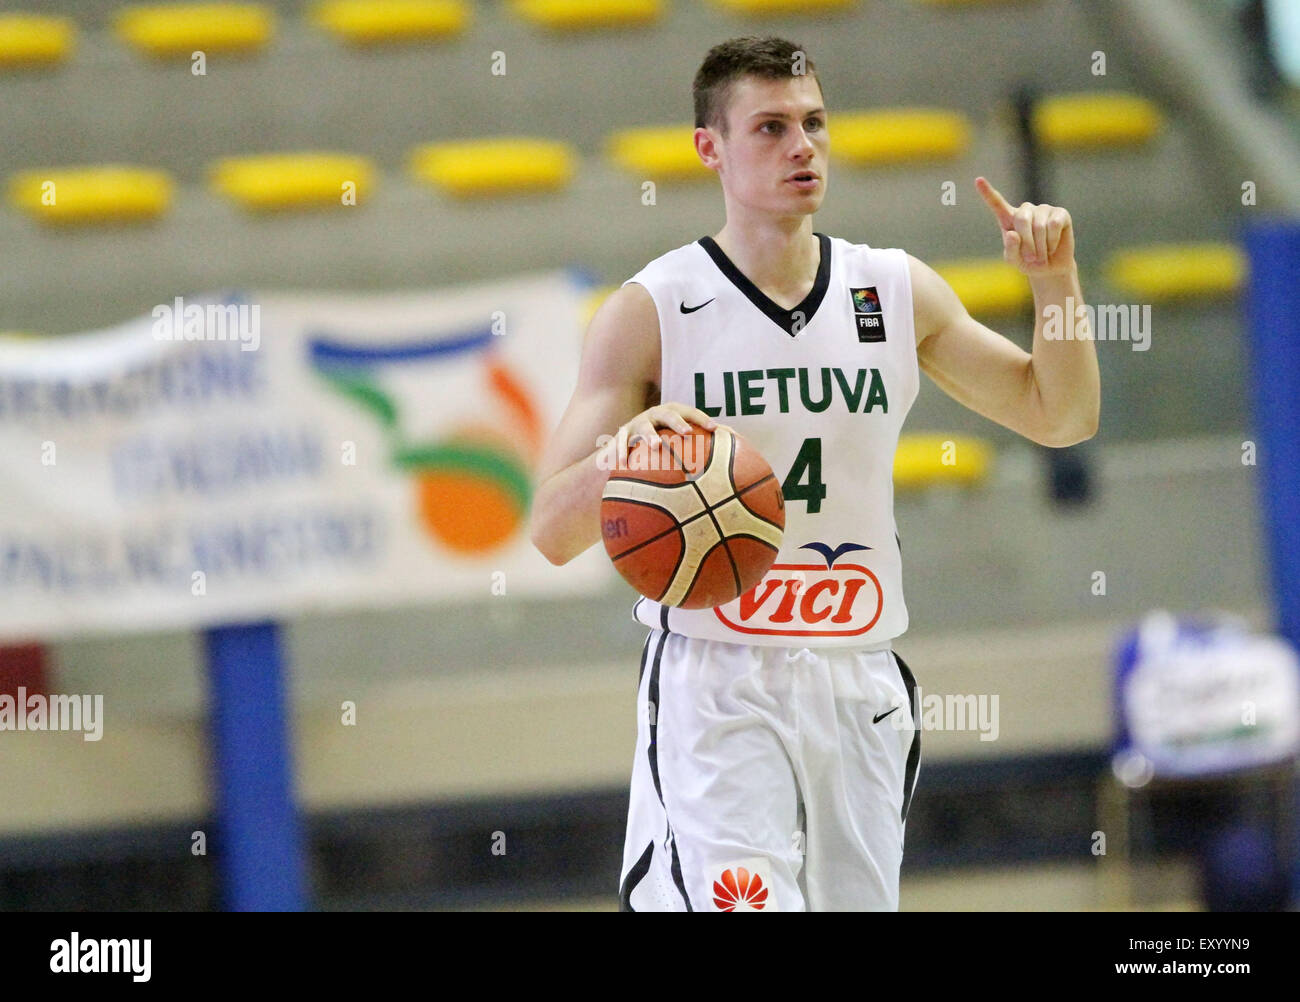 Italia Lignano :Lituania Jurgutis Zydrunas gestos durante el baloncesto  semifinales partido entre Lituania y Letonia de la U20 Campeonato Europeo  Masculino 2015 en Pala Getur sports hall de Lignano el sábado 18